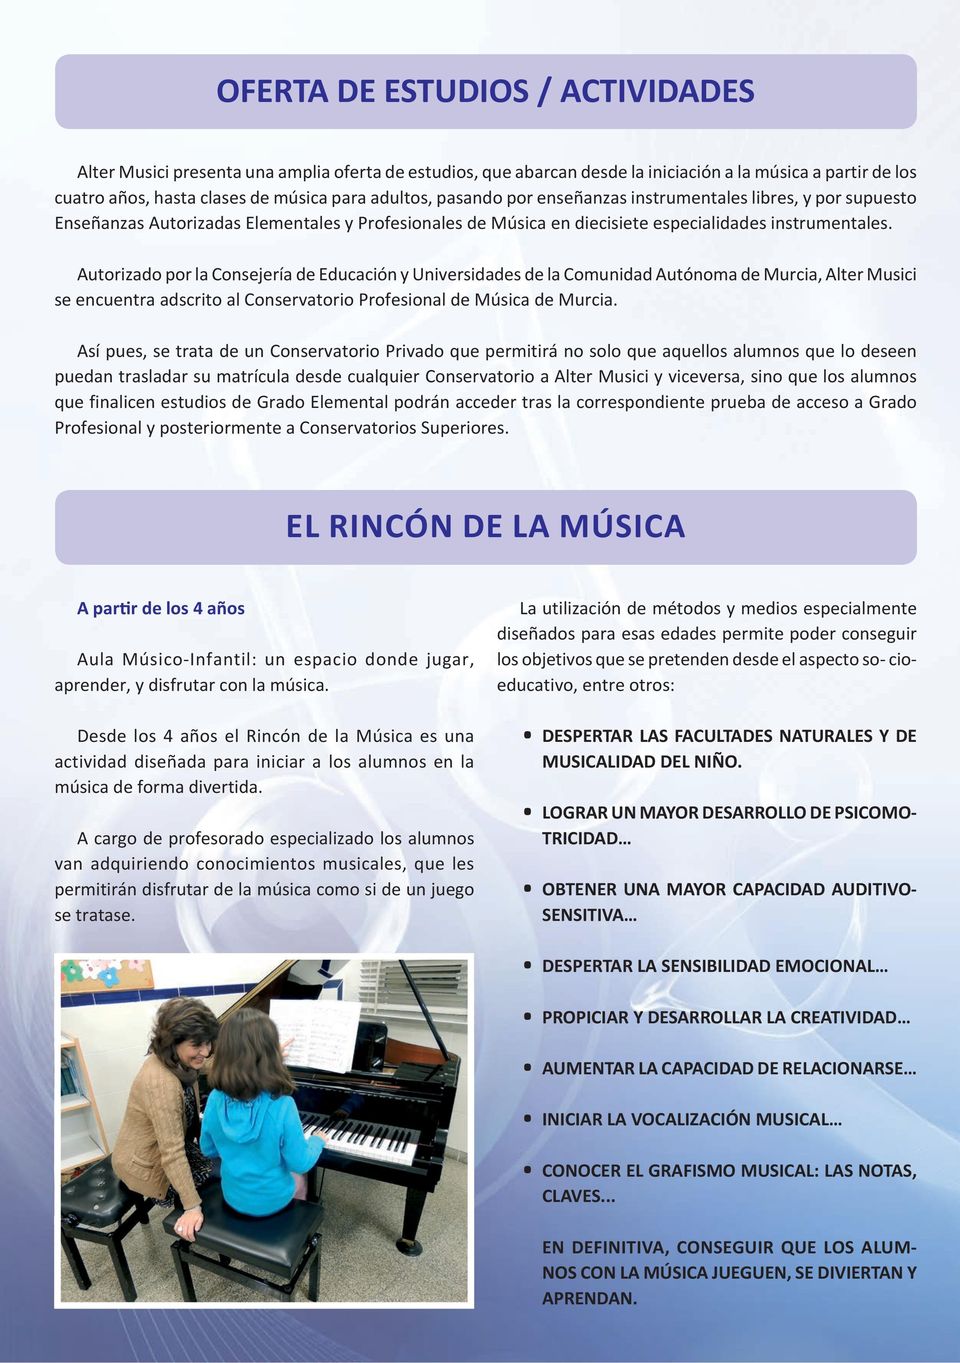 Autorizado por la Consejería de Educación y Universidades de la Comunidad Autónoma de Murcia, Alter Musici se encuentra adscrito al Conservatorio Profesional de Música de Murcia.